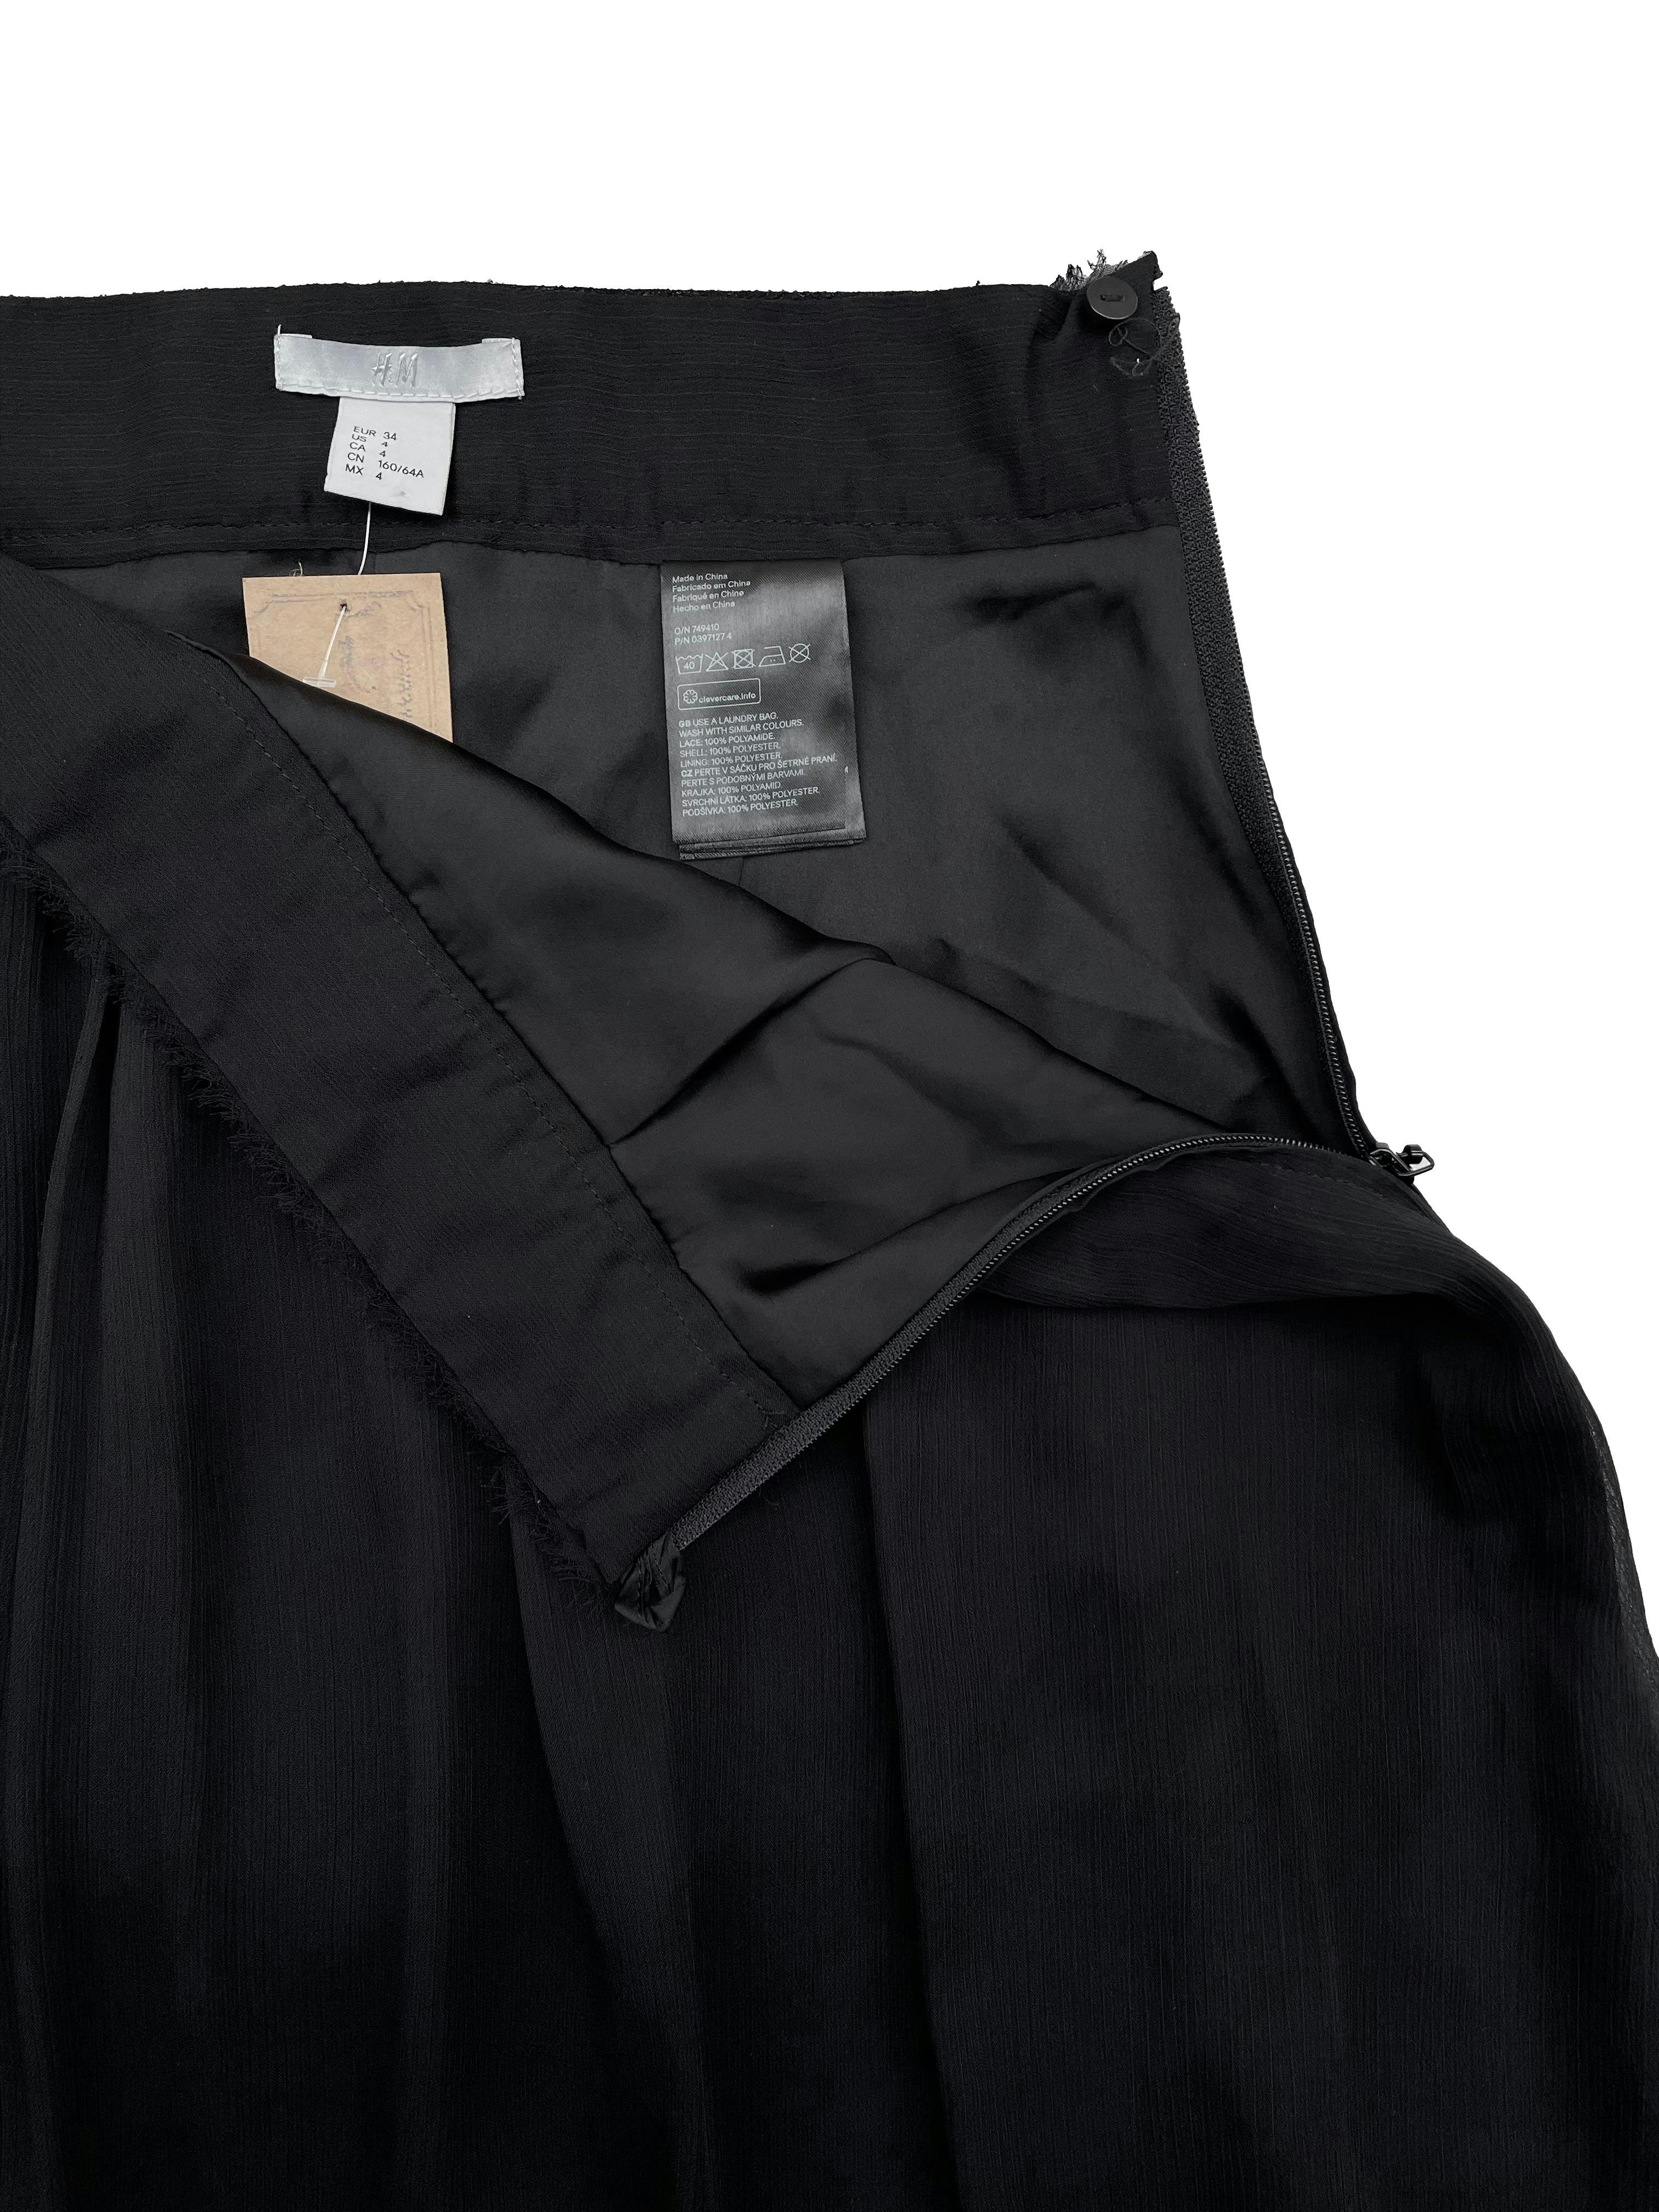 Falda H&M de gasa negra con forro, detalles desflecados y blonda en la basta, lleva cierre lateral. Cintura: 64cm, Largo: 52cm